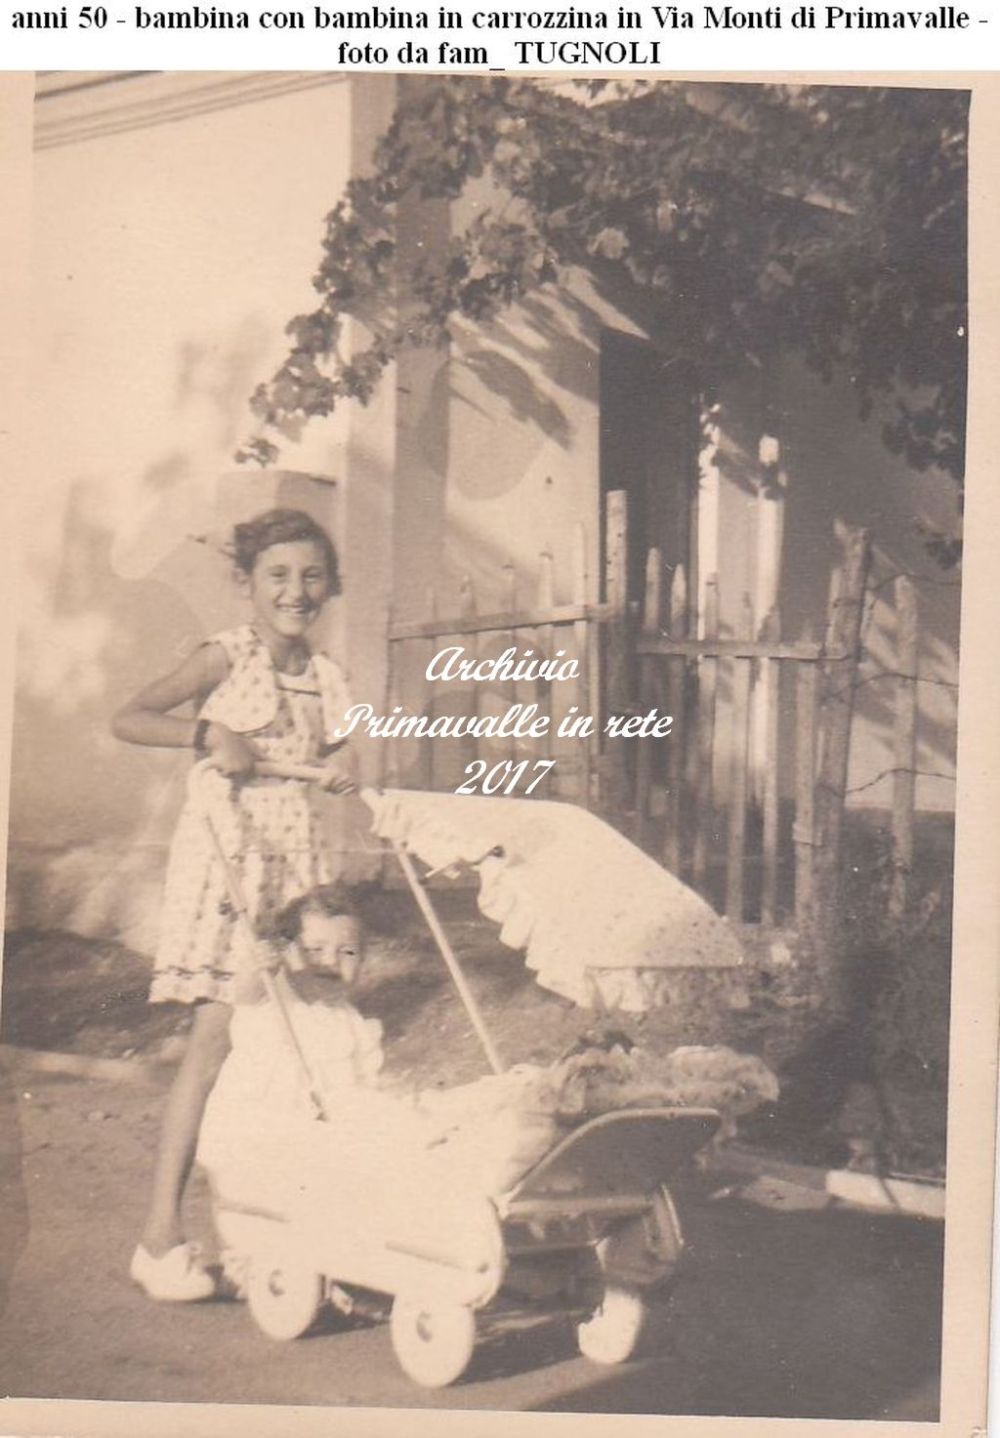 anni 50 - bambina con bambina in carrozzina in Via Monti di Primavalle - foto da fam_ TUGNOLI